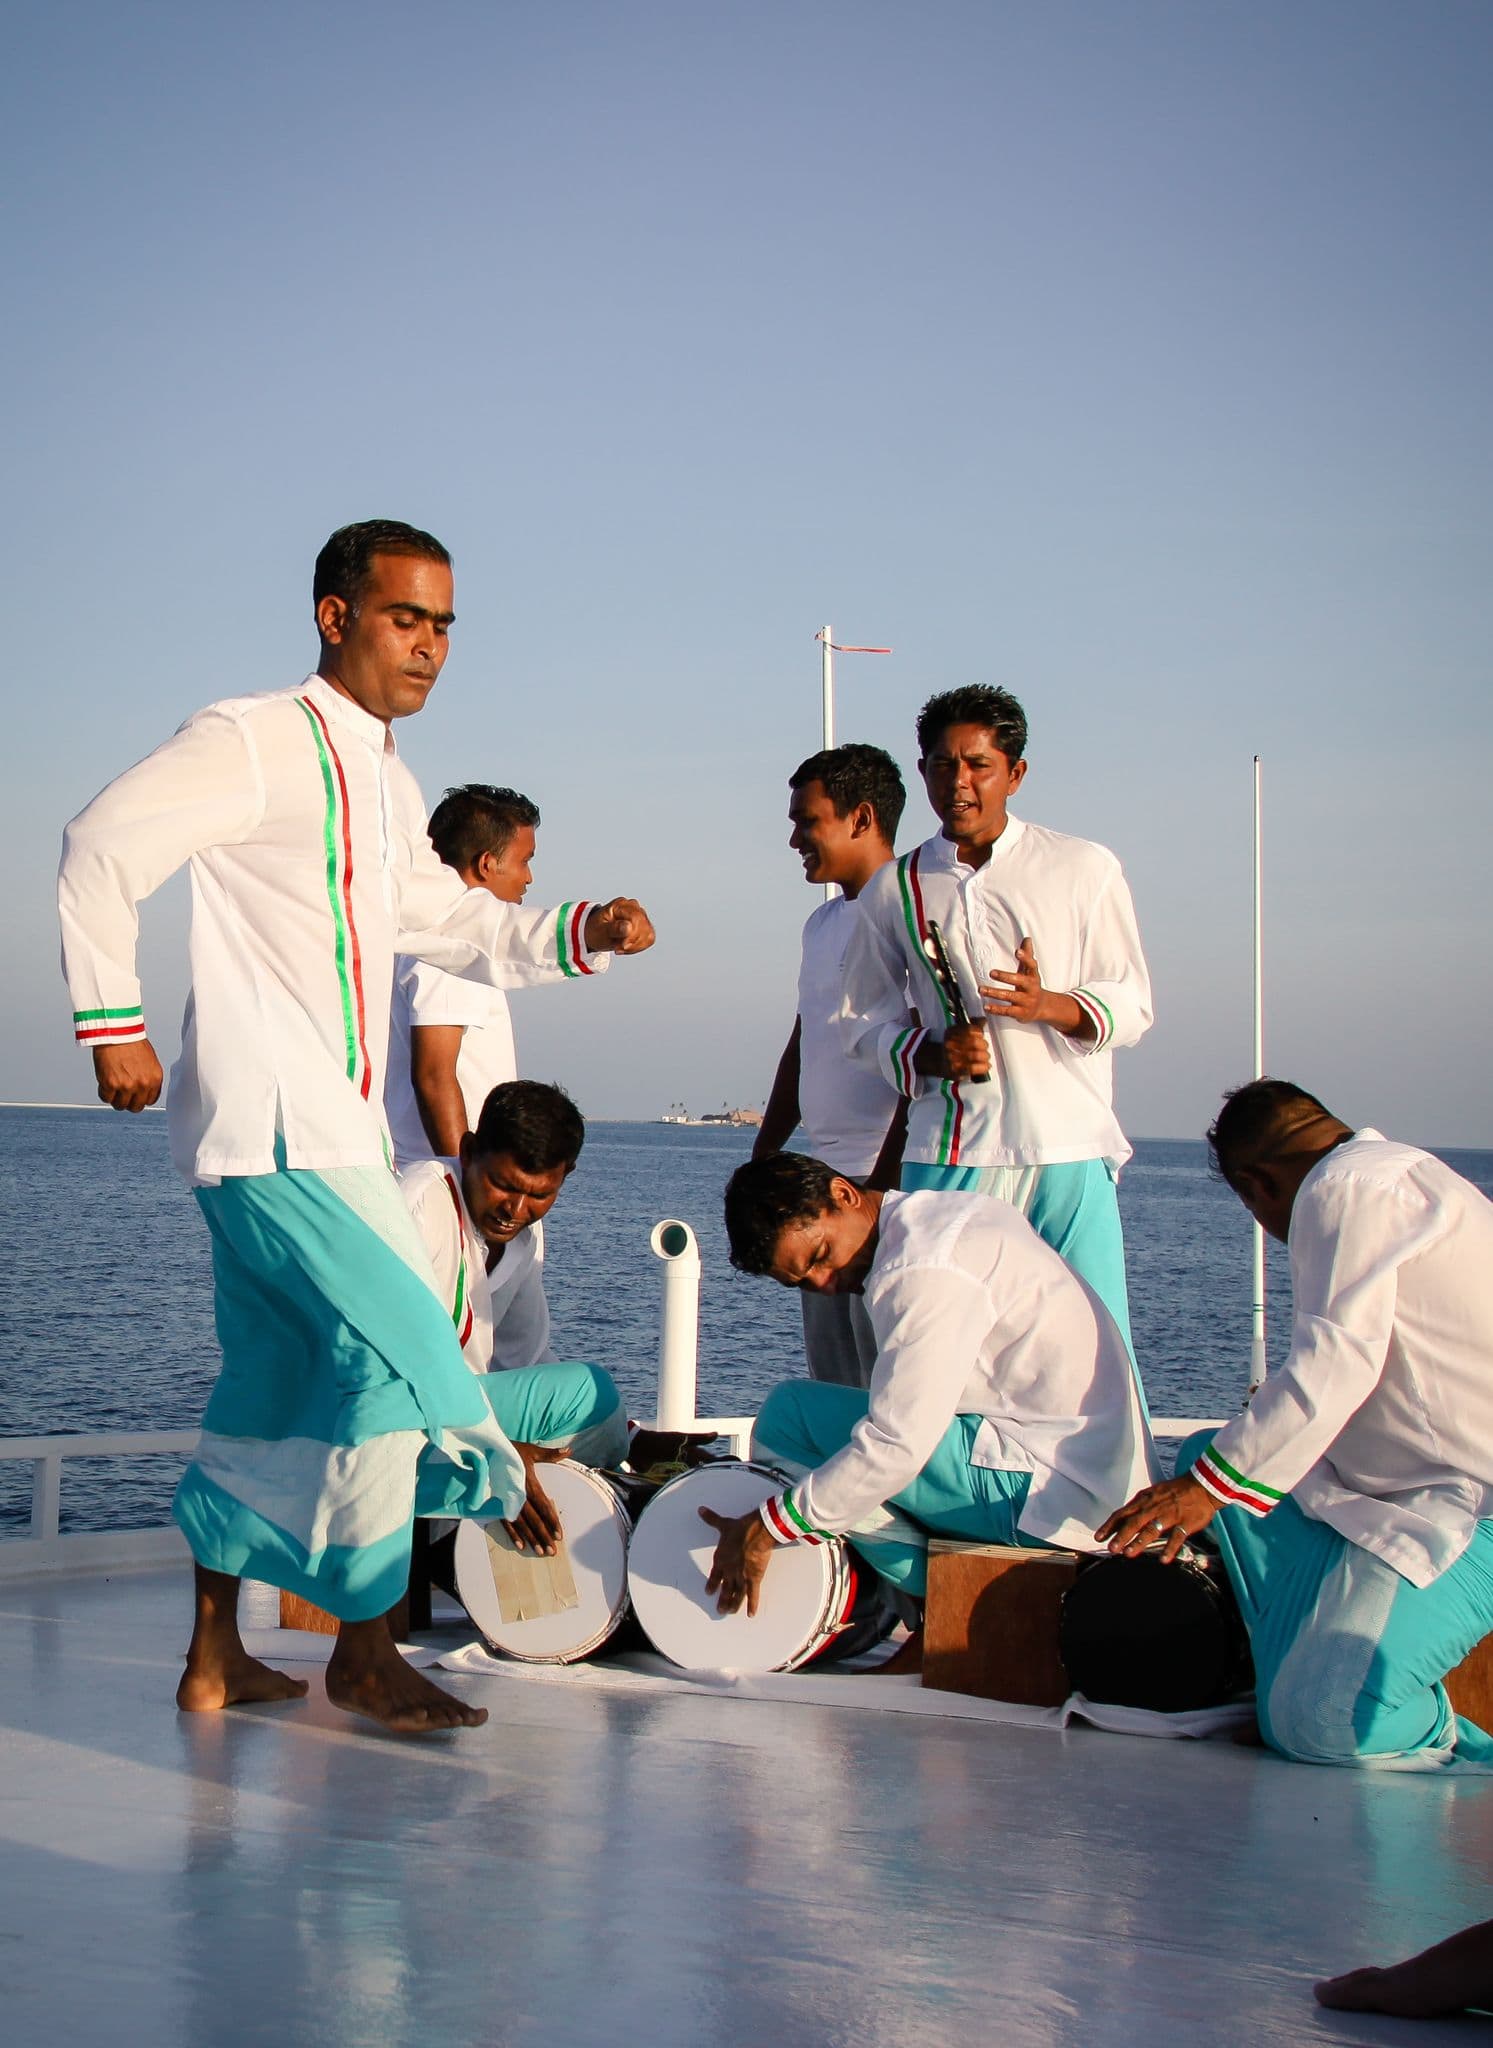 Sunset Cruise - Reisen in Style Reisebericht Malediven